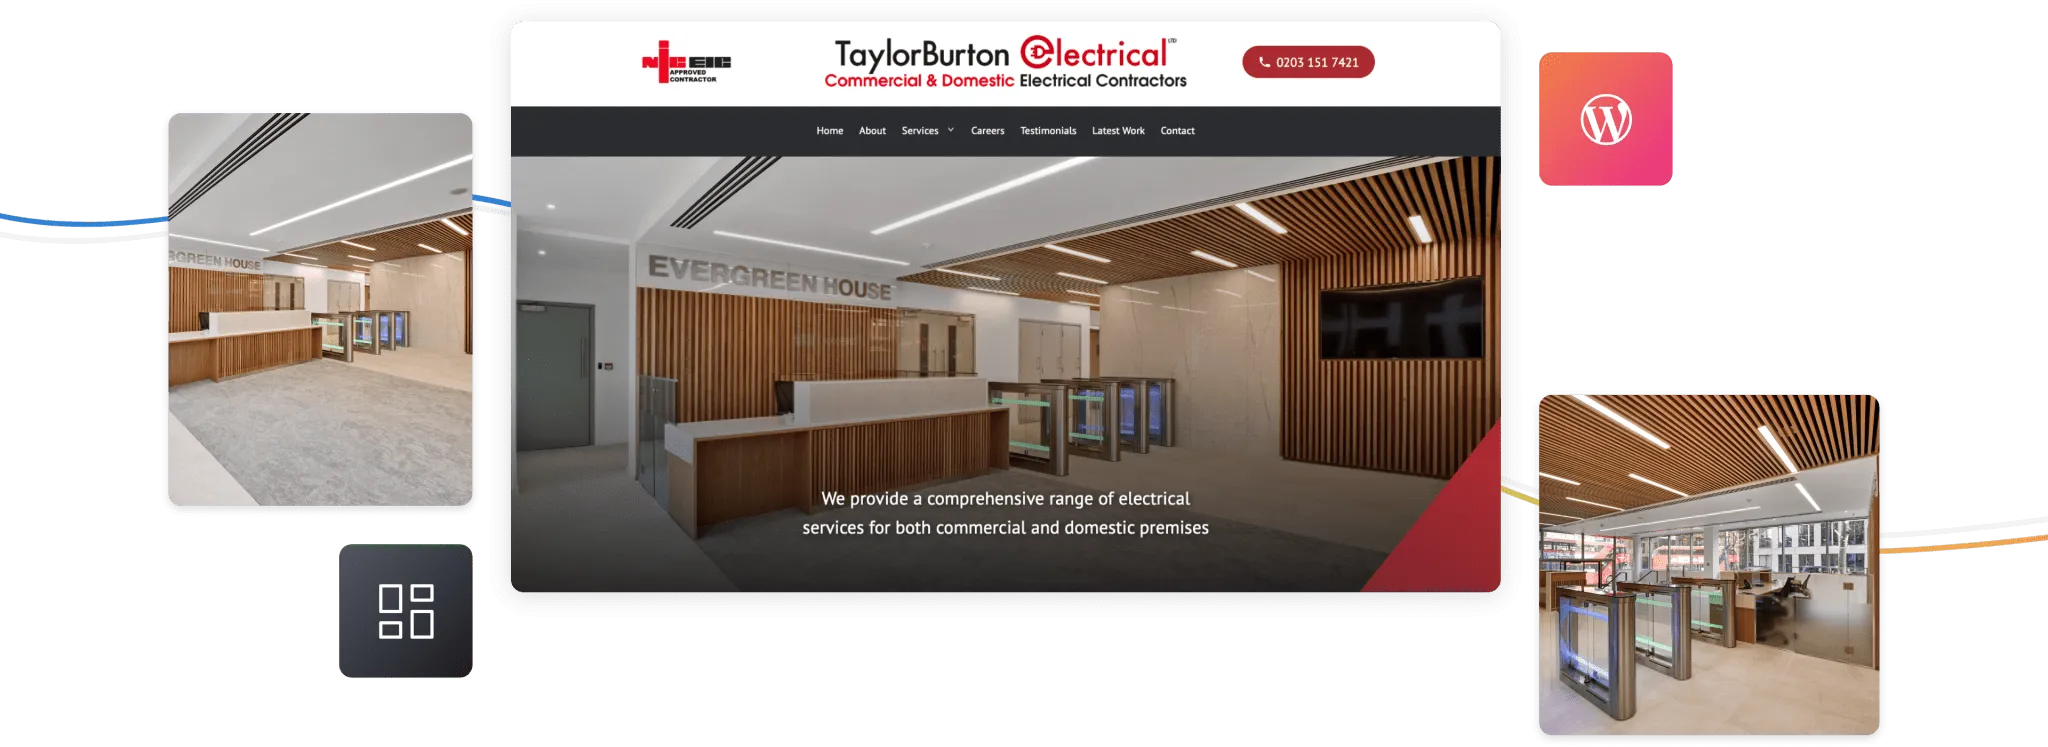 Screenshot showing TaylorBurton homepage